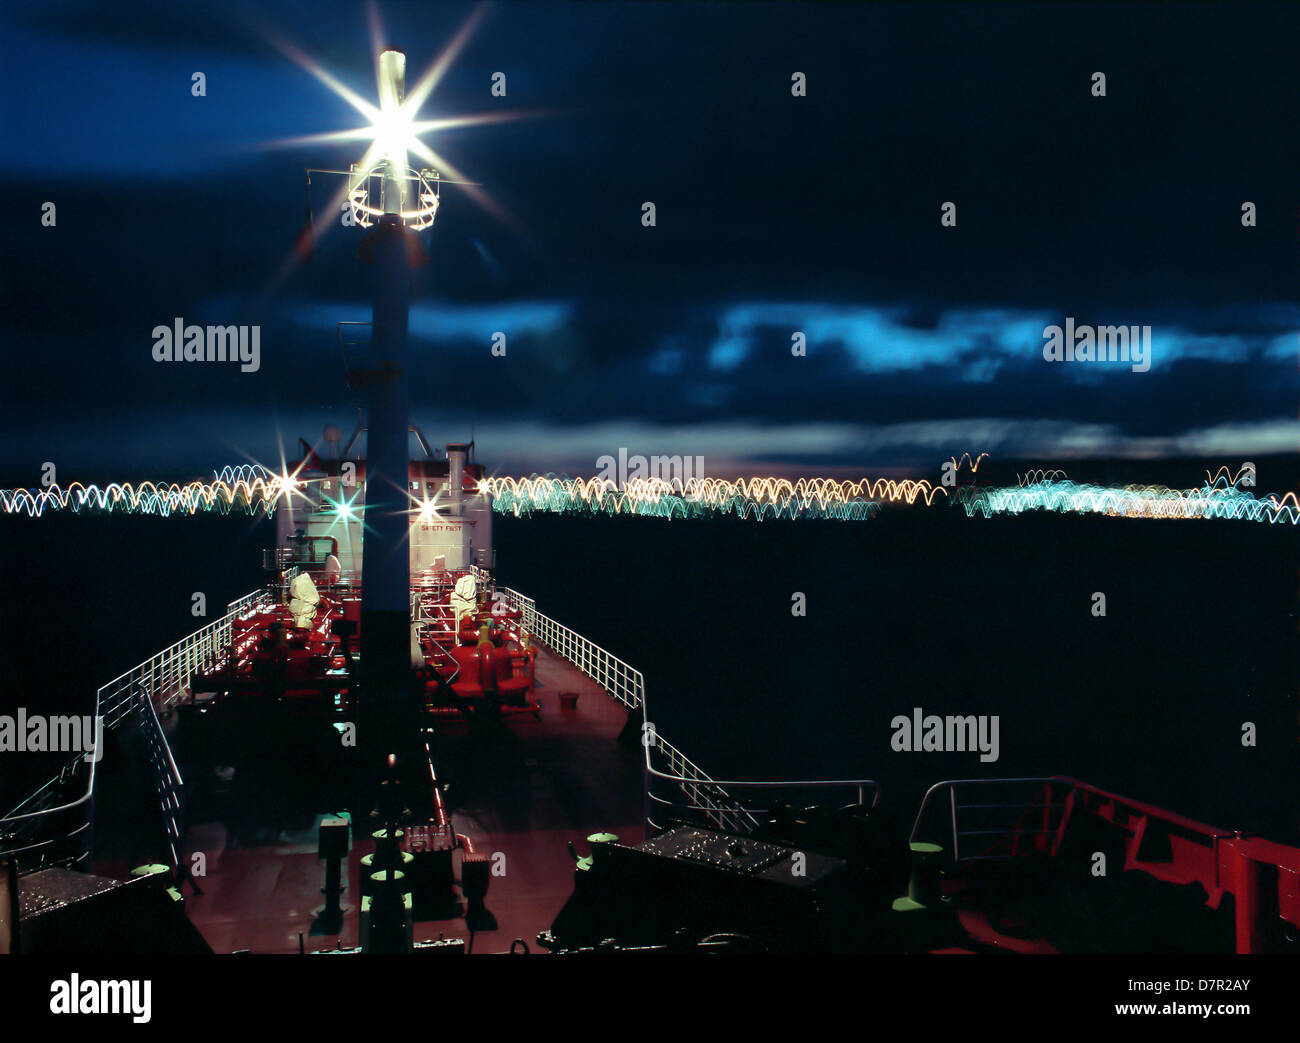 Nacht, Meer, Meer, Schiff, Fracht, Schiff, lpg, Gas, Träger, Beleuchtung, Lampe, Meer, Küste, Stadt, Moving, tanker Stockfoto